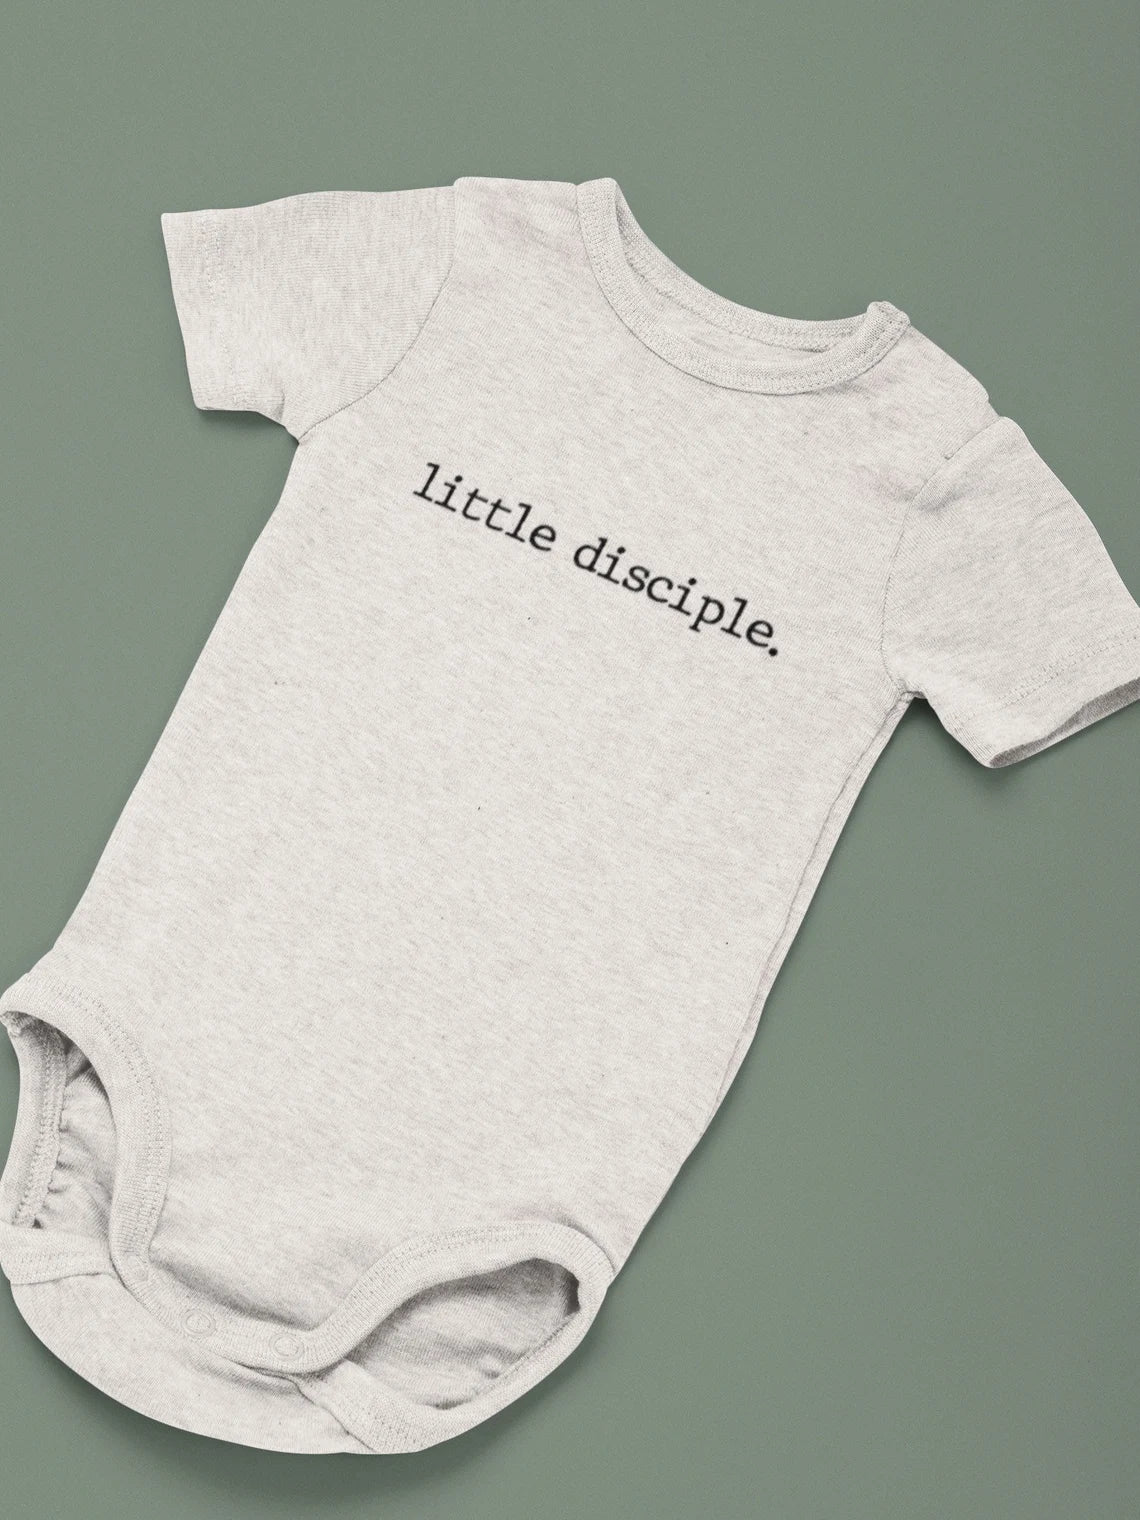 Little Disciple